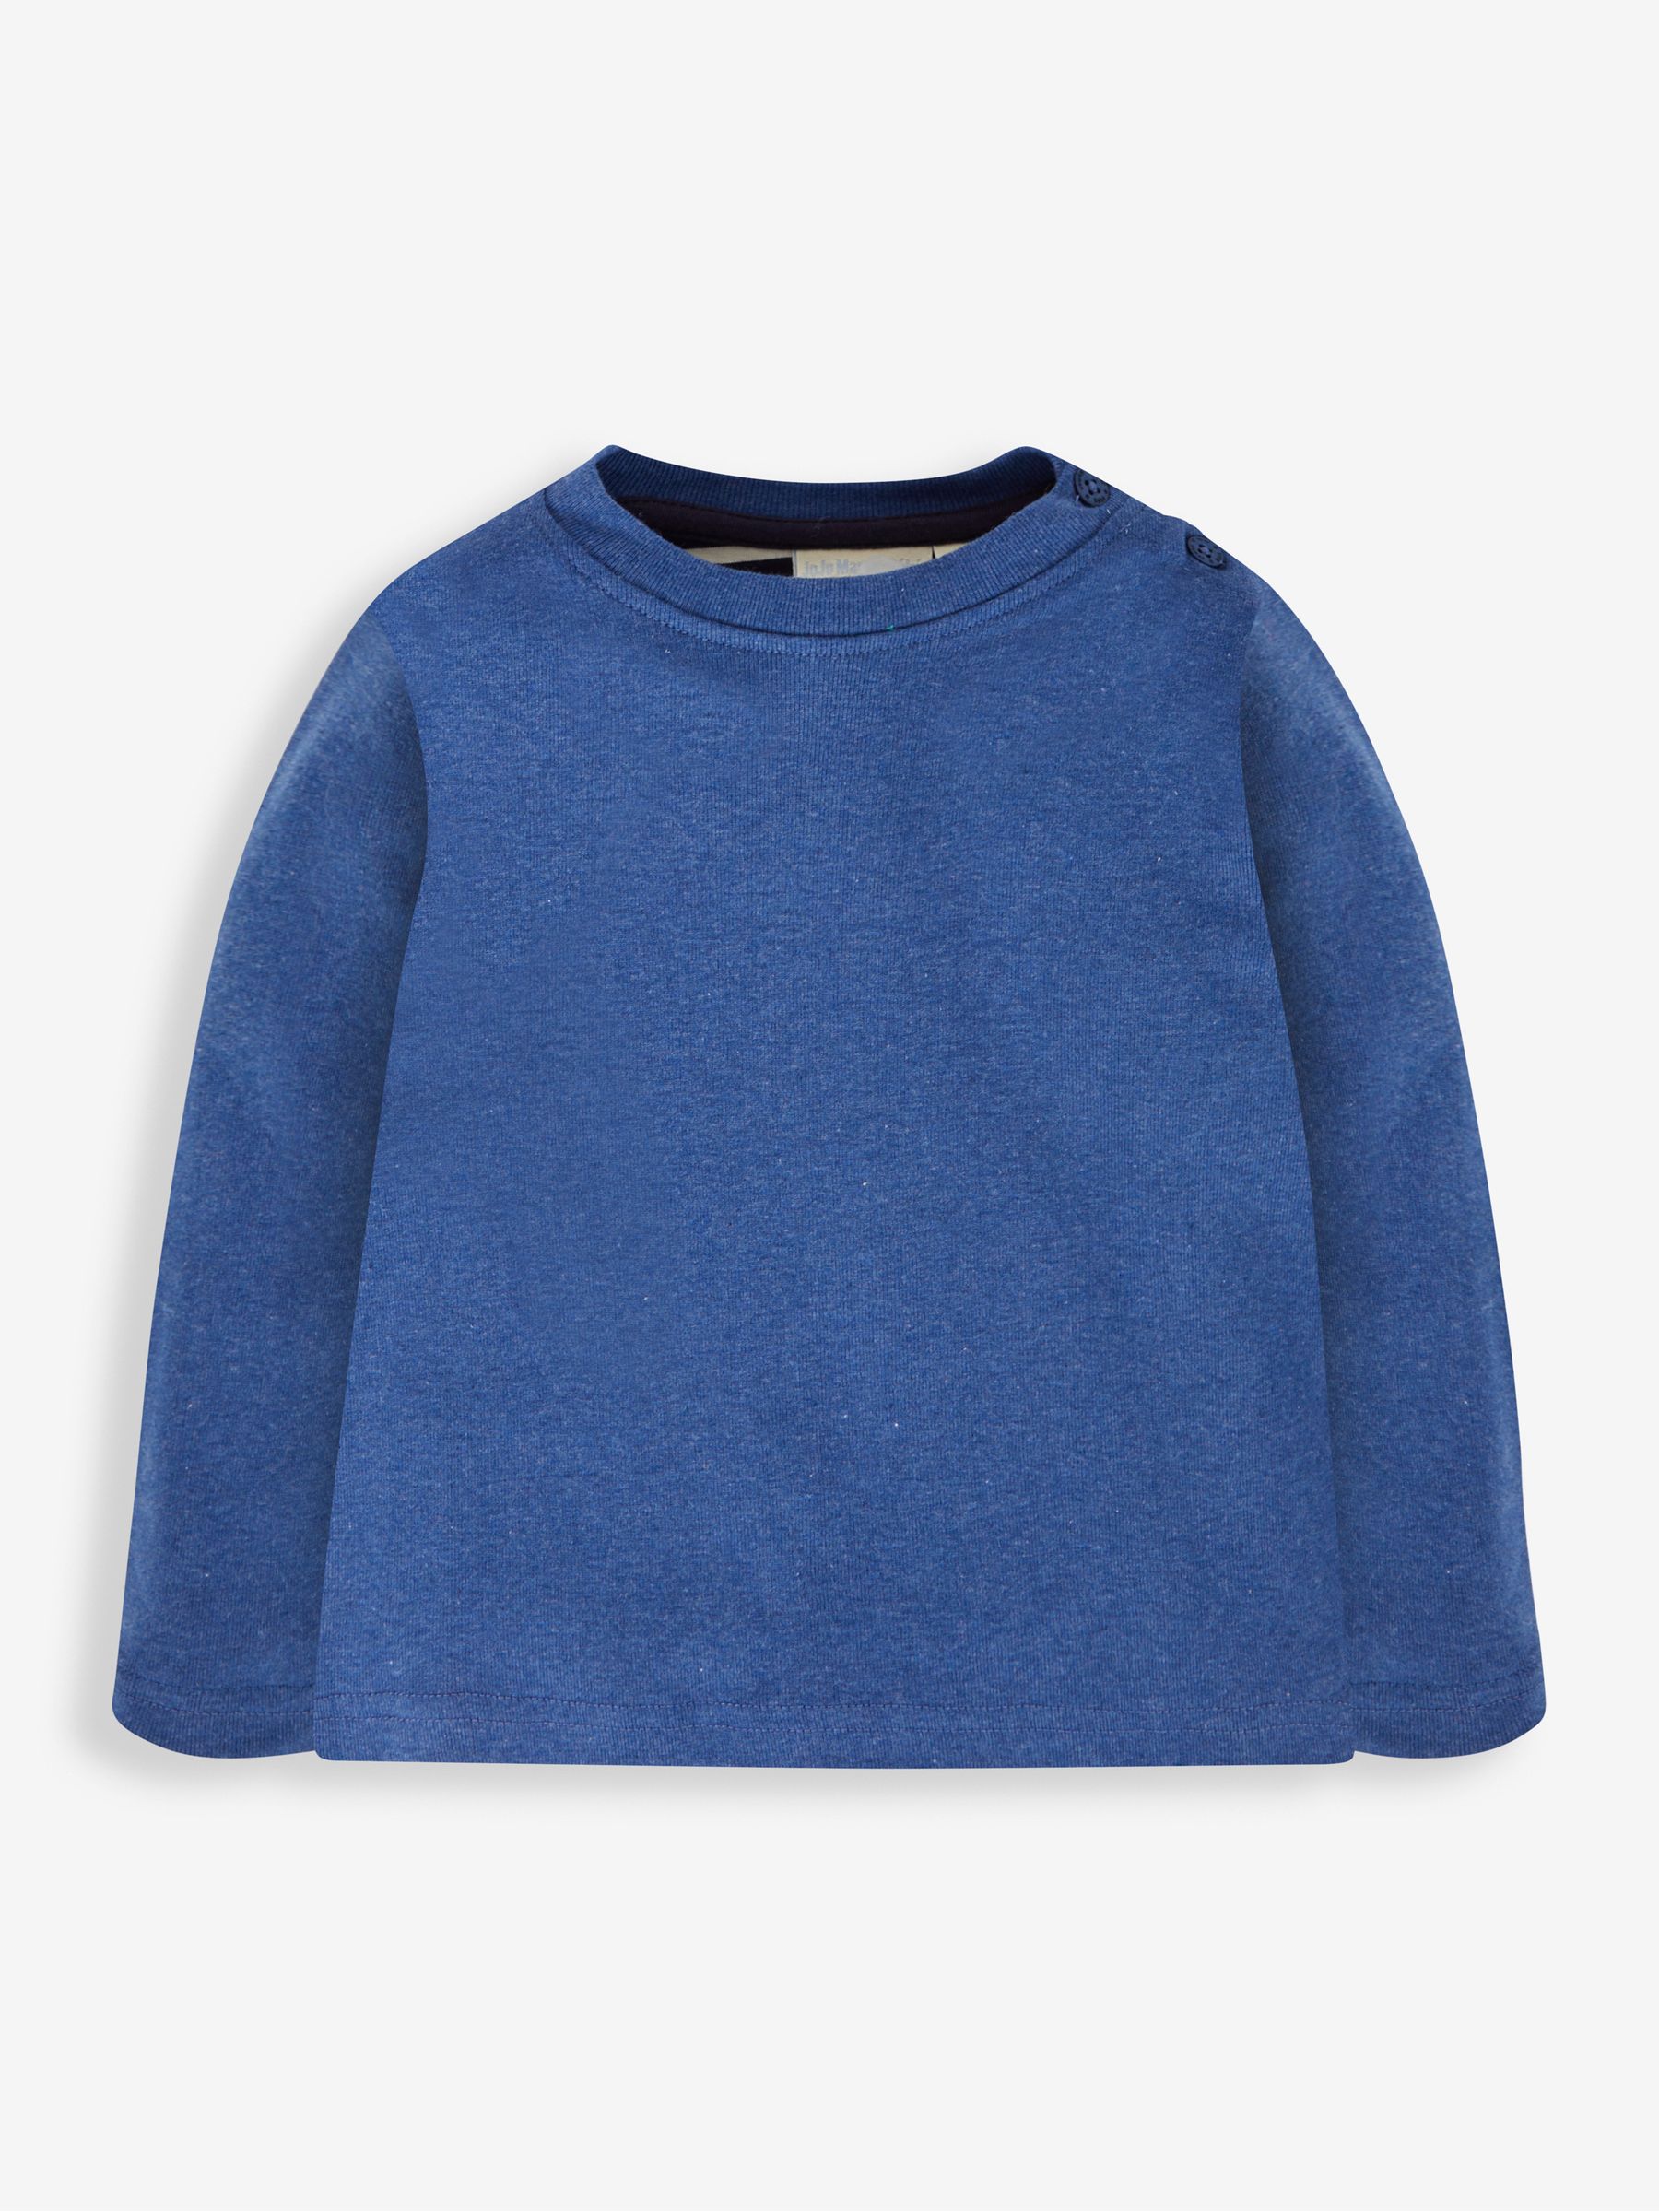 Buy Denim Blue & Khaki Green 2-Pack Plain Long Sleeved Tops from the ...